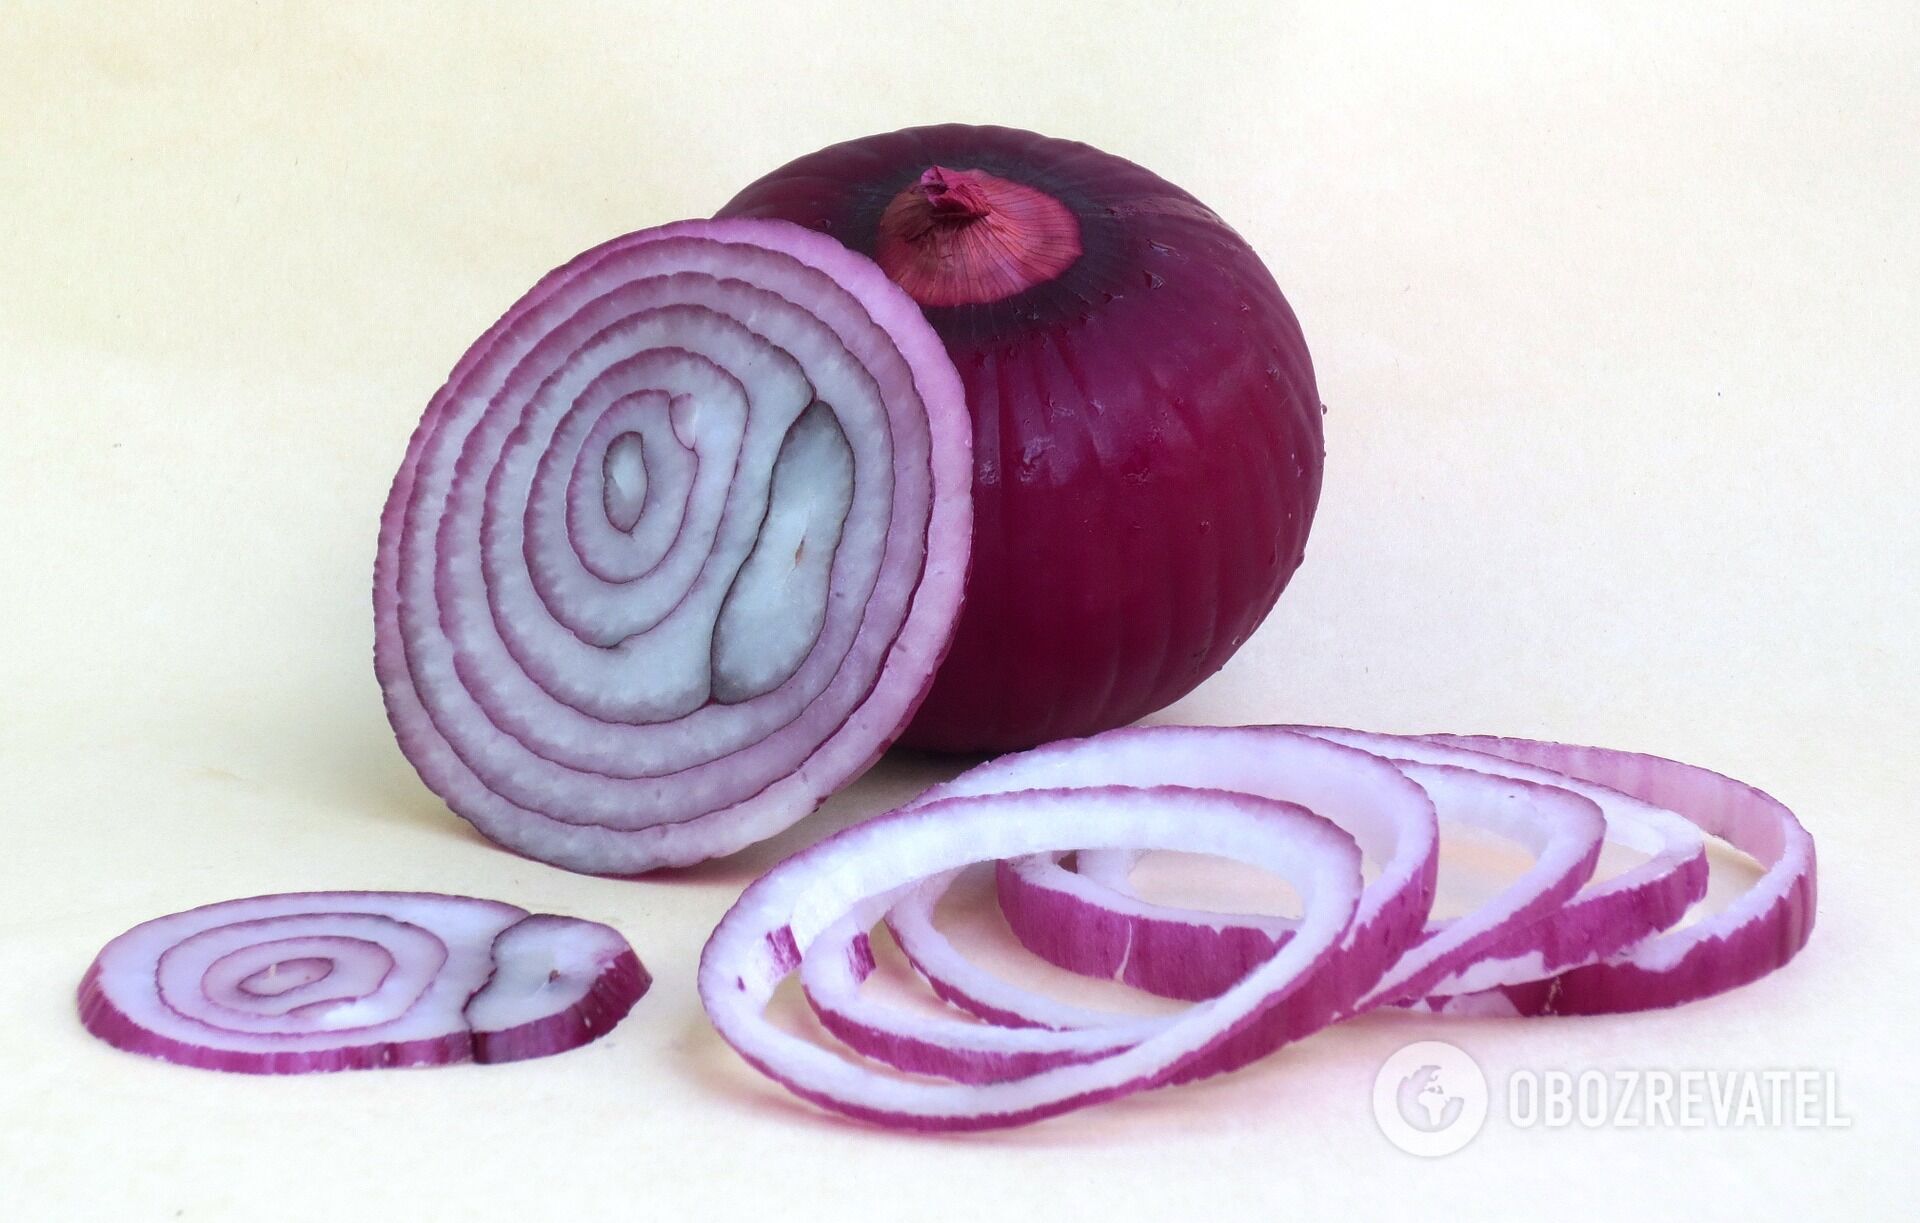 Blue onion